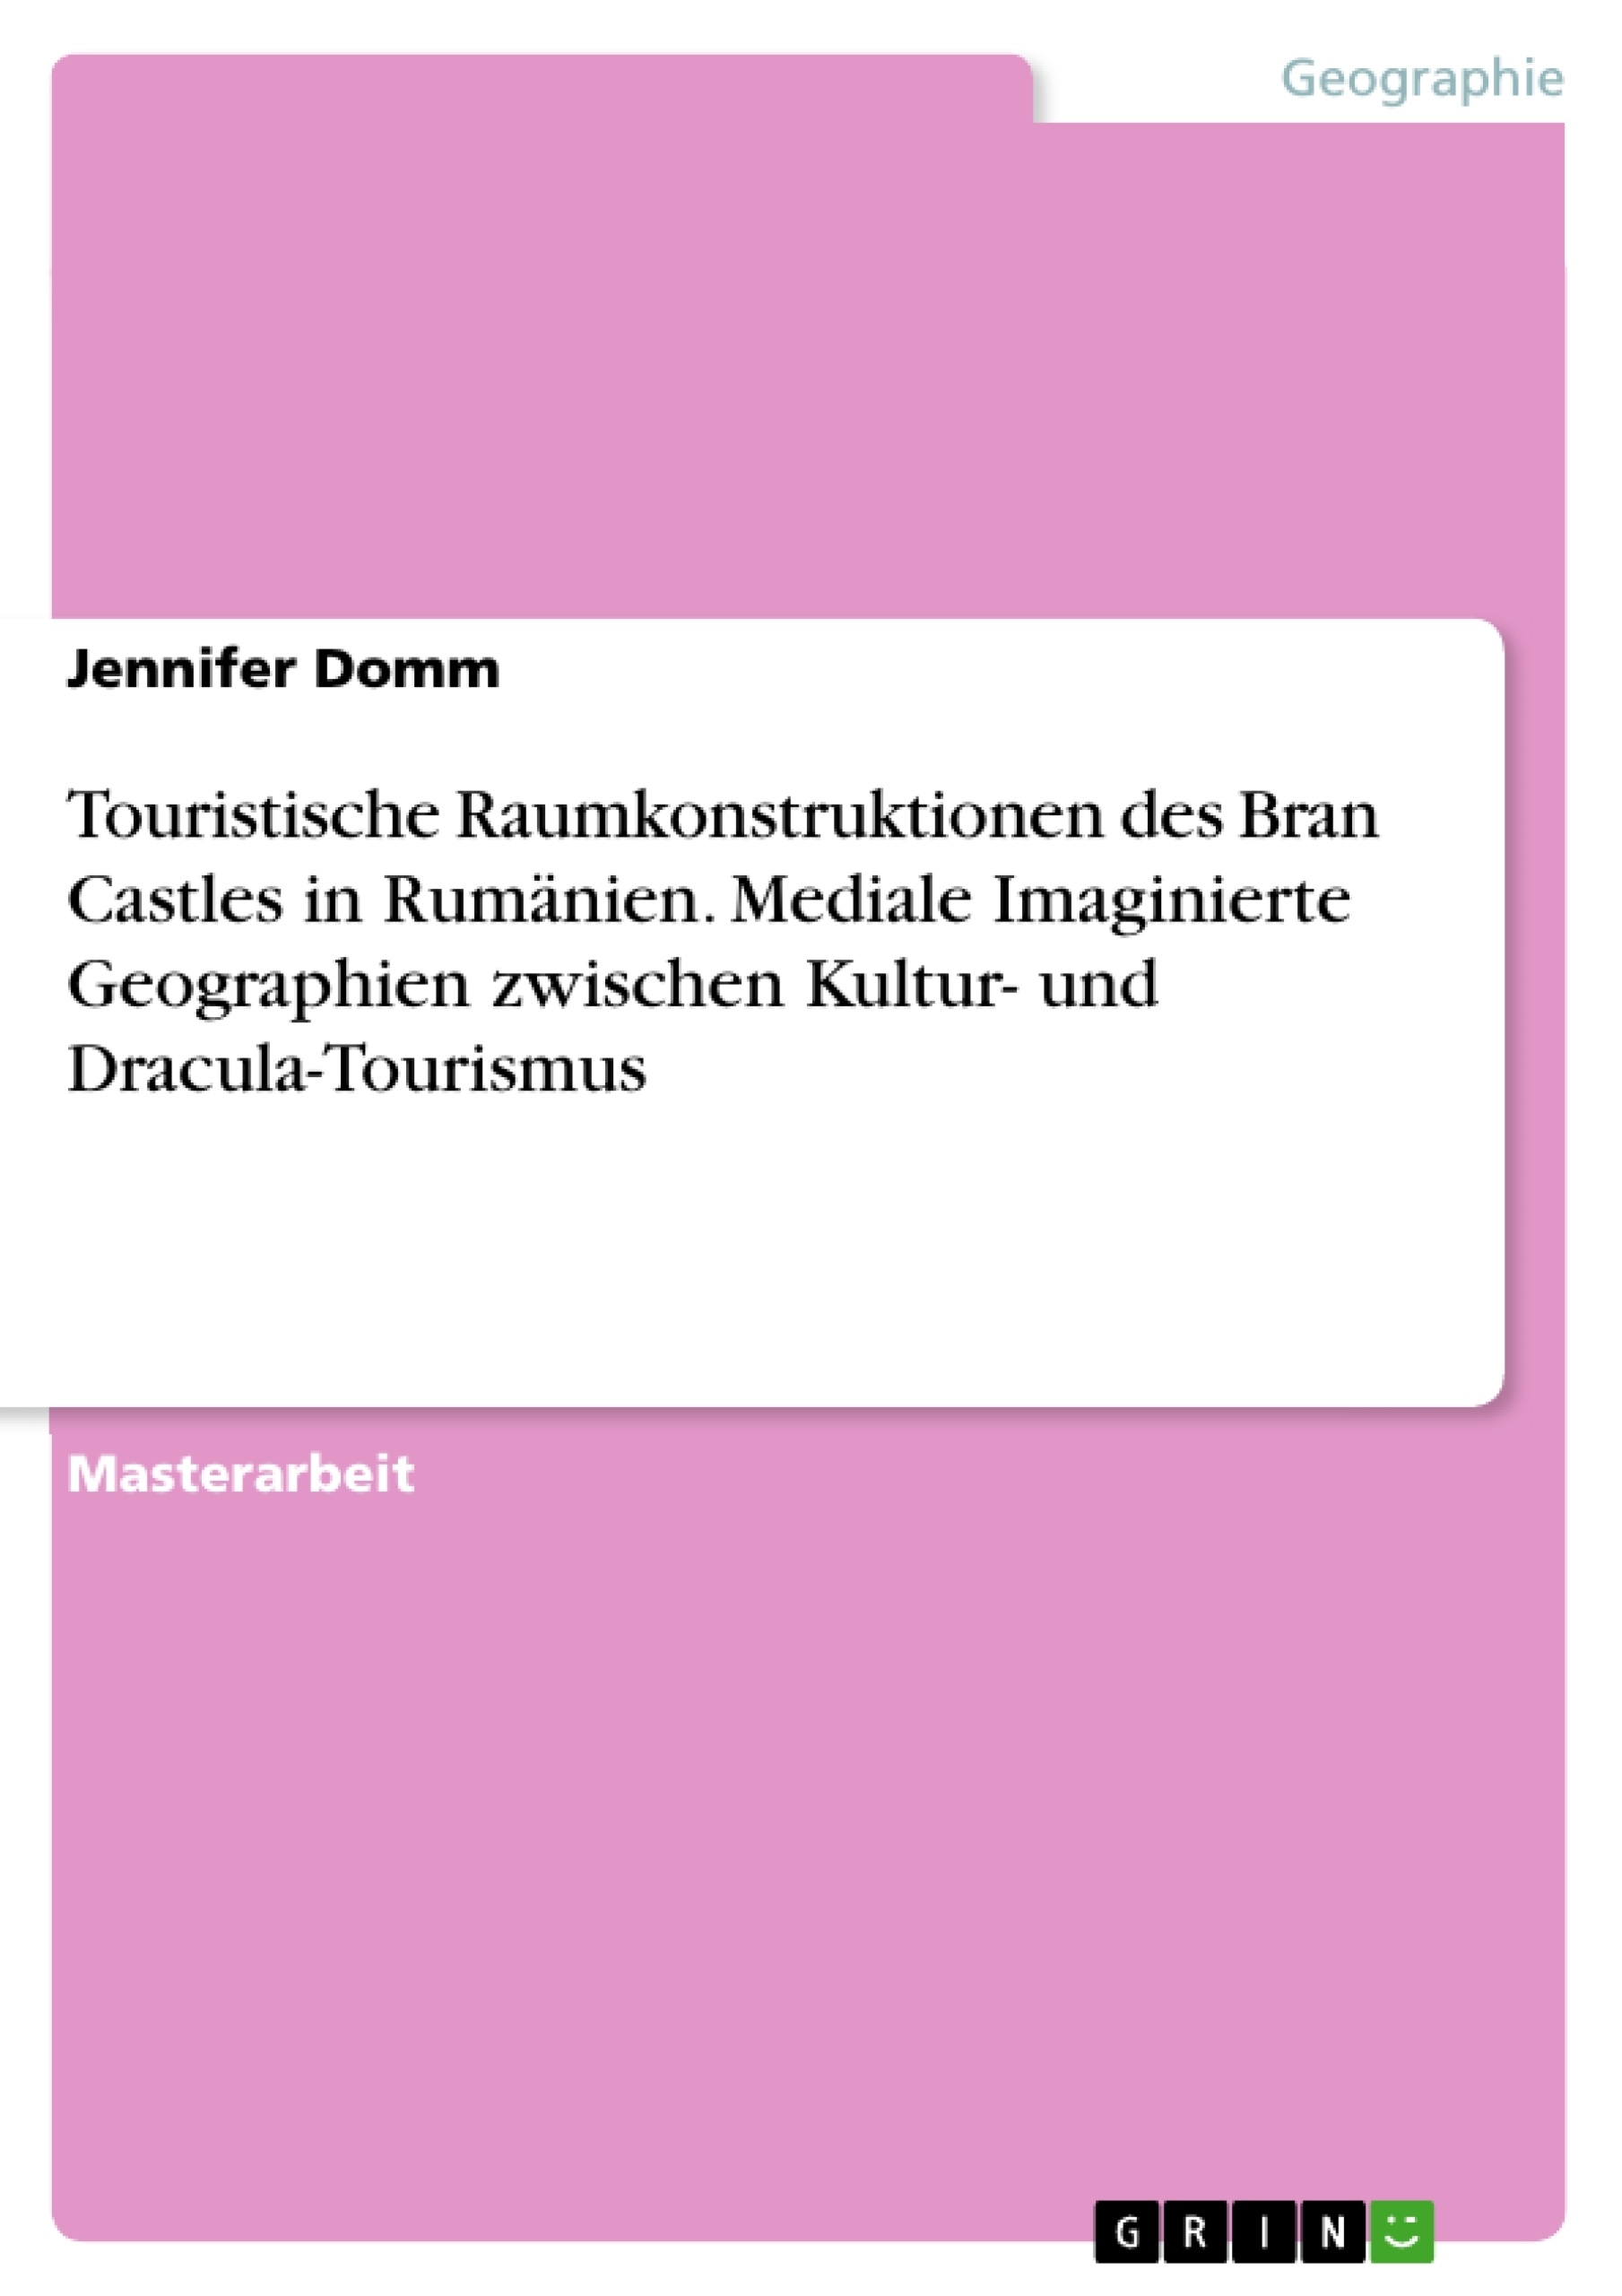 Title: Touristische Raumkonstruktionen des Bran Castles in Rumänien. Mediale Imaginierte Geographien zwischen Kultur- und Dracula-Tourismus